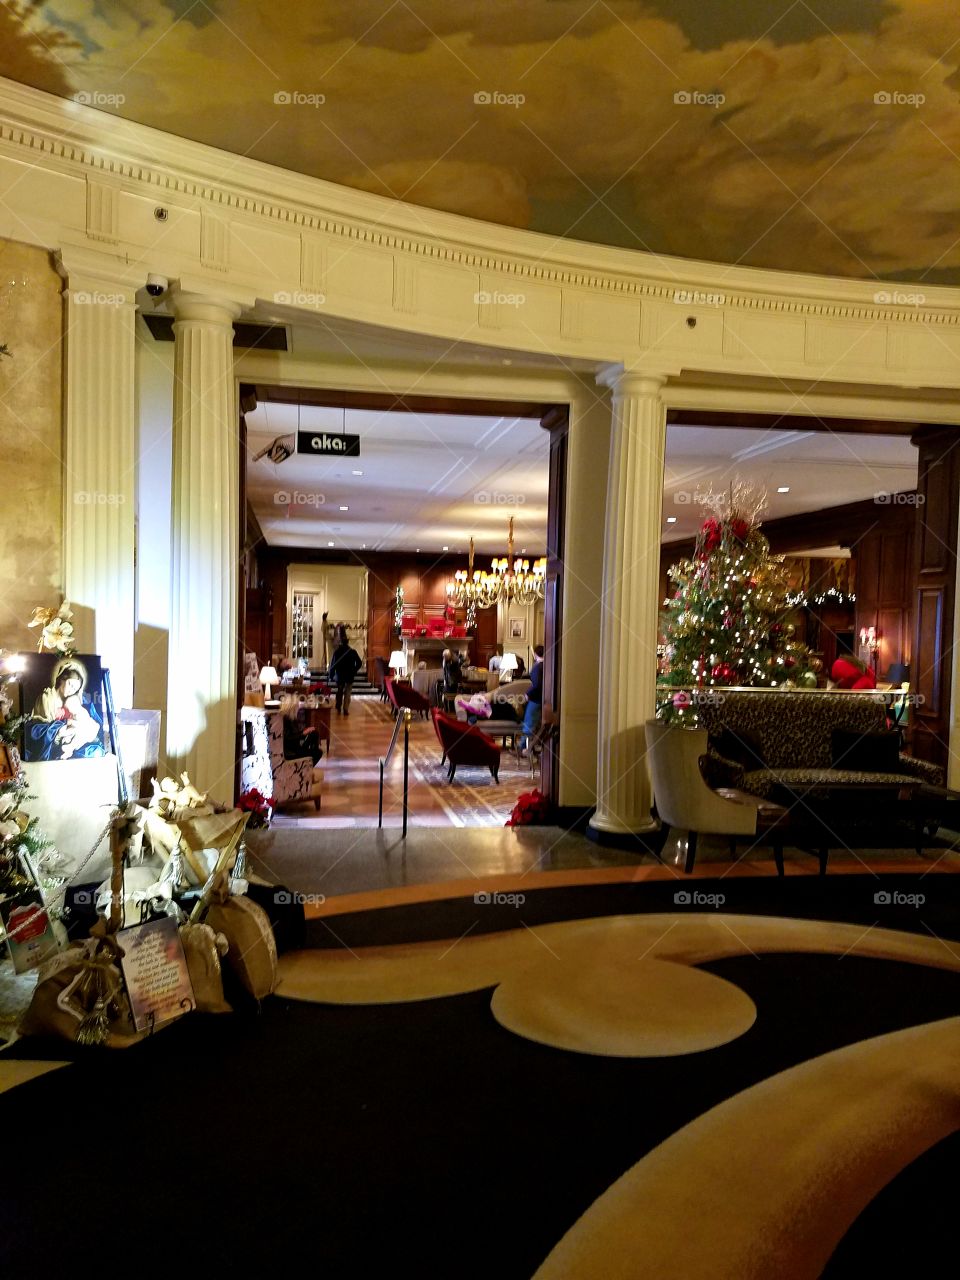 Inside the Hotel Roanoke 